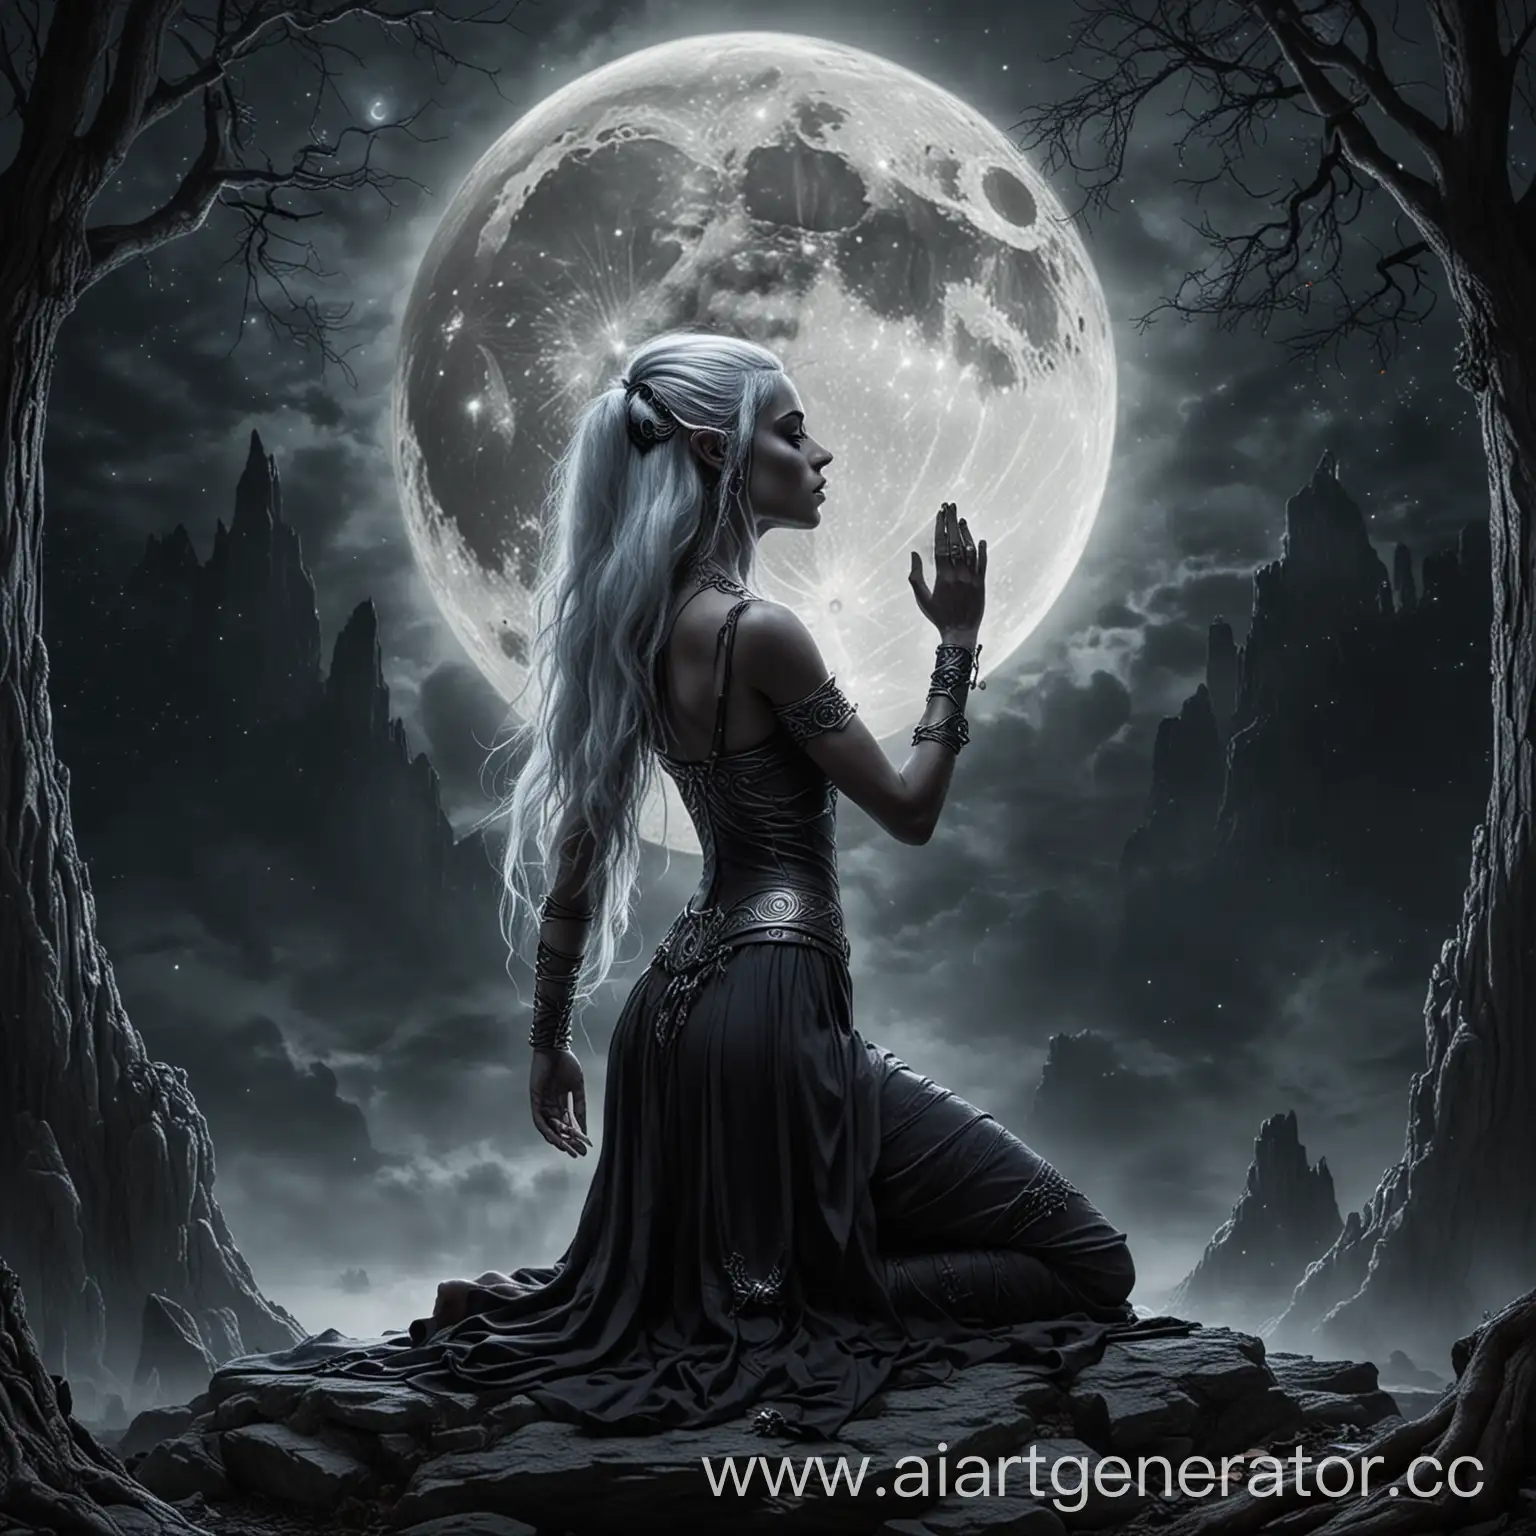 Dark-Elf-Praying-to-Goddess-of-Moon